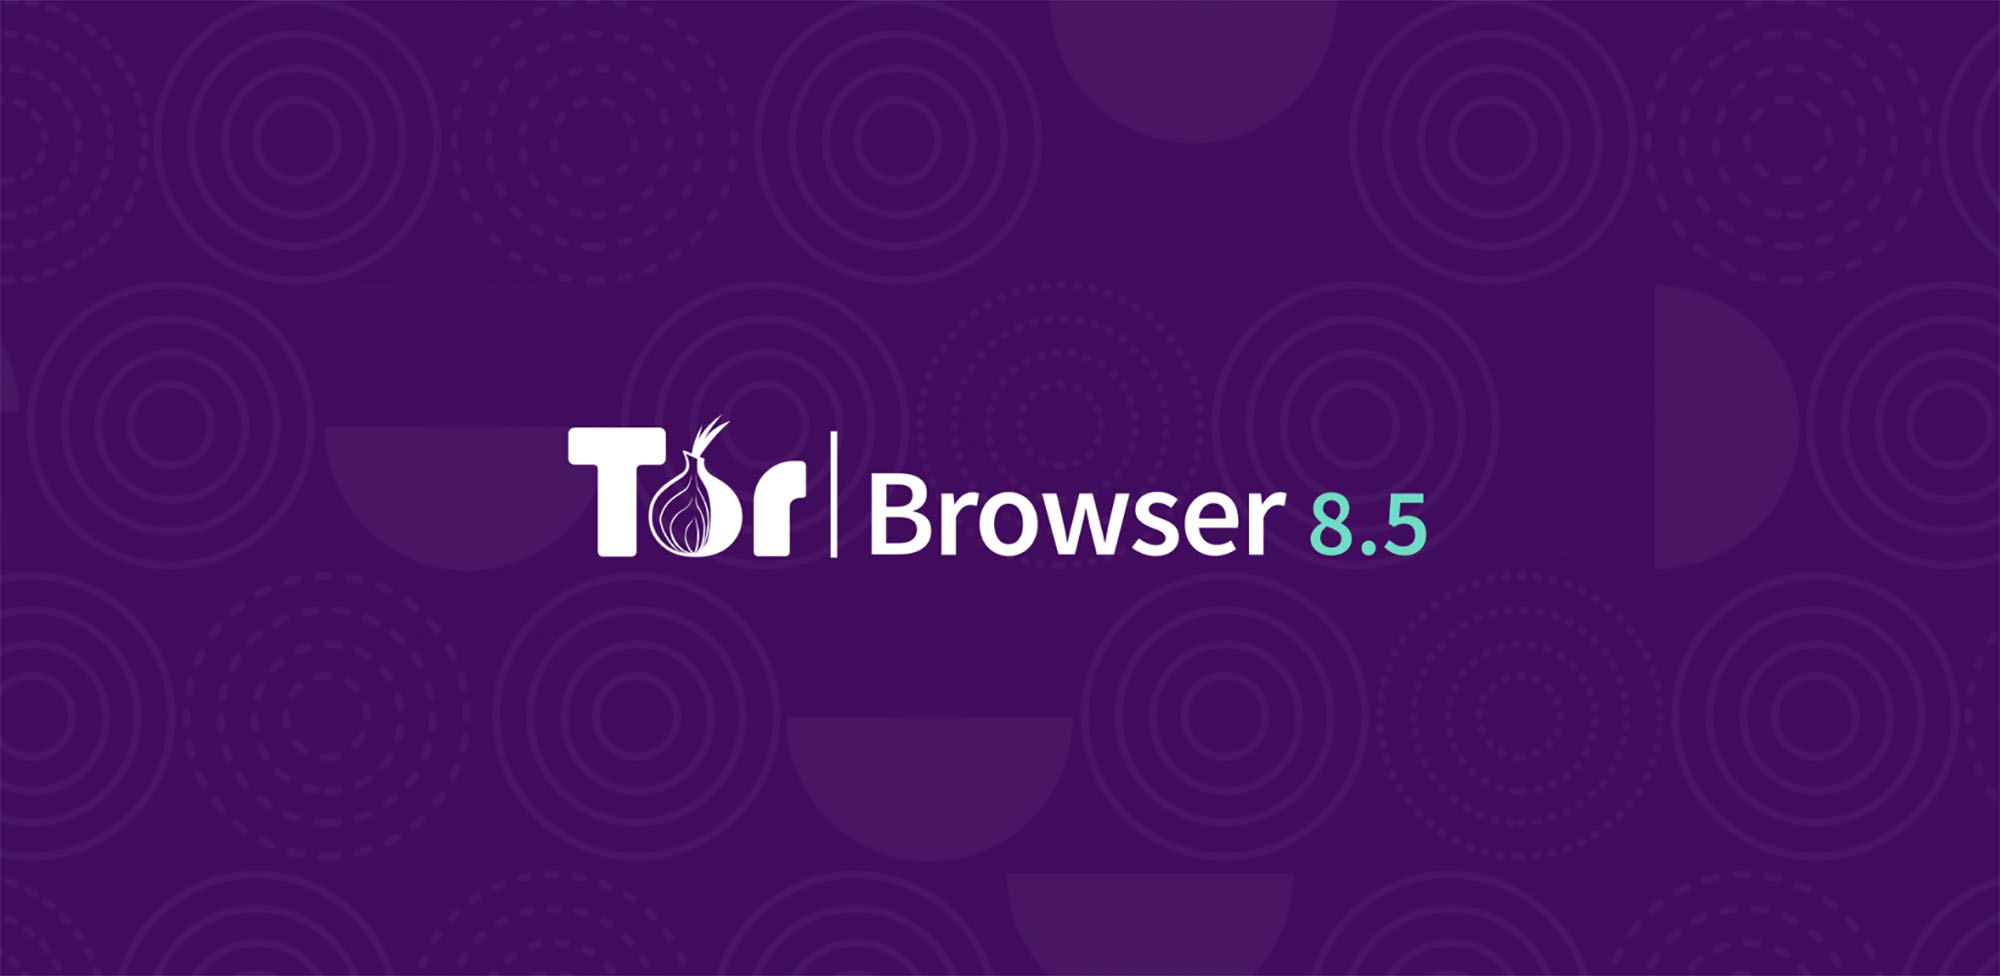 Tor browser 24 mega закрытые сайты через тор megaruzxpnew4af